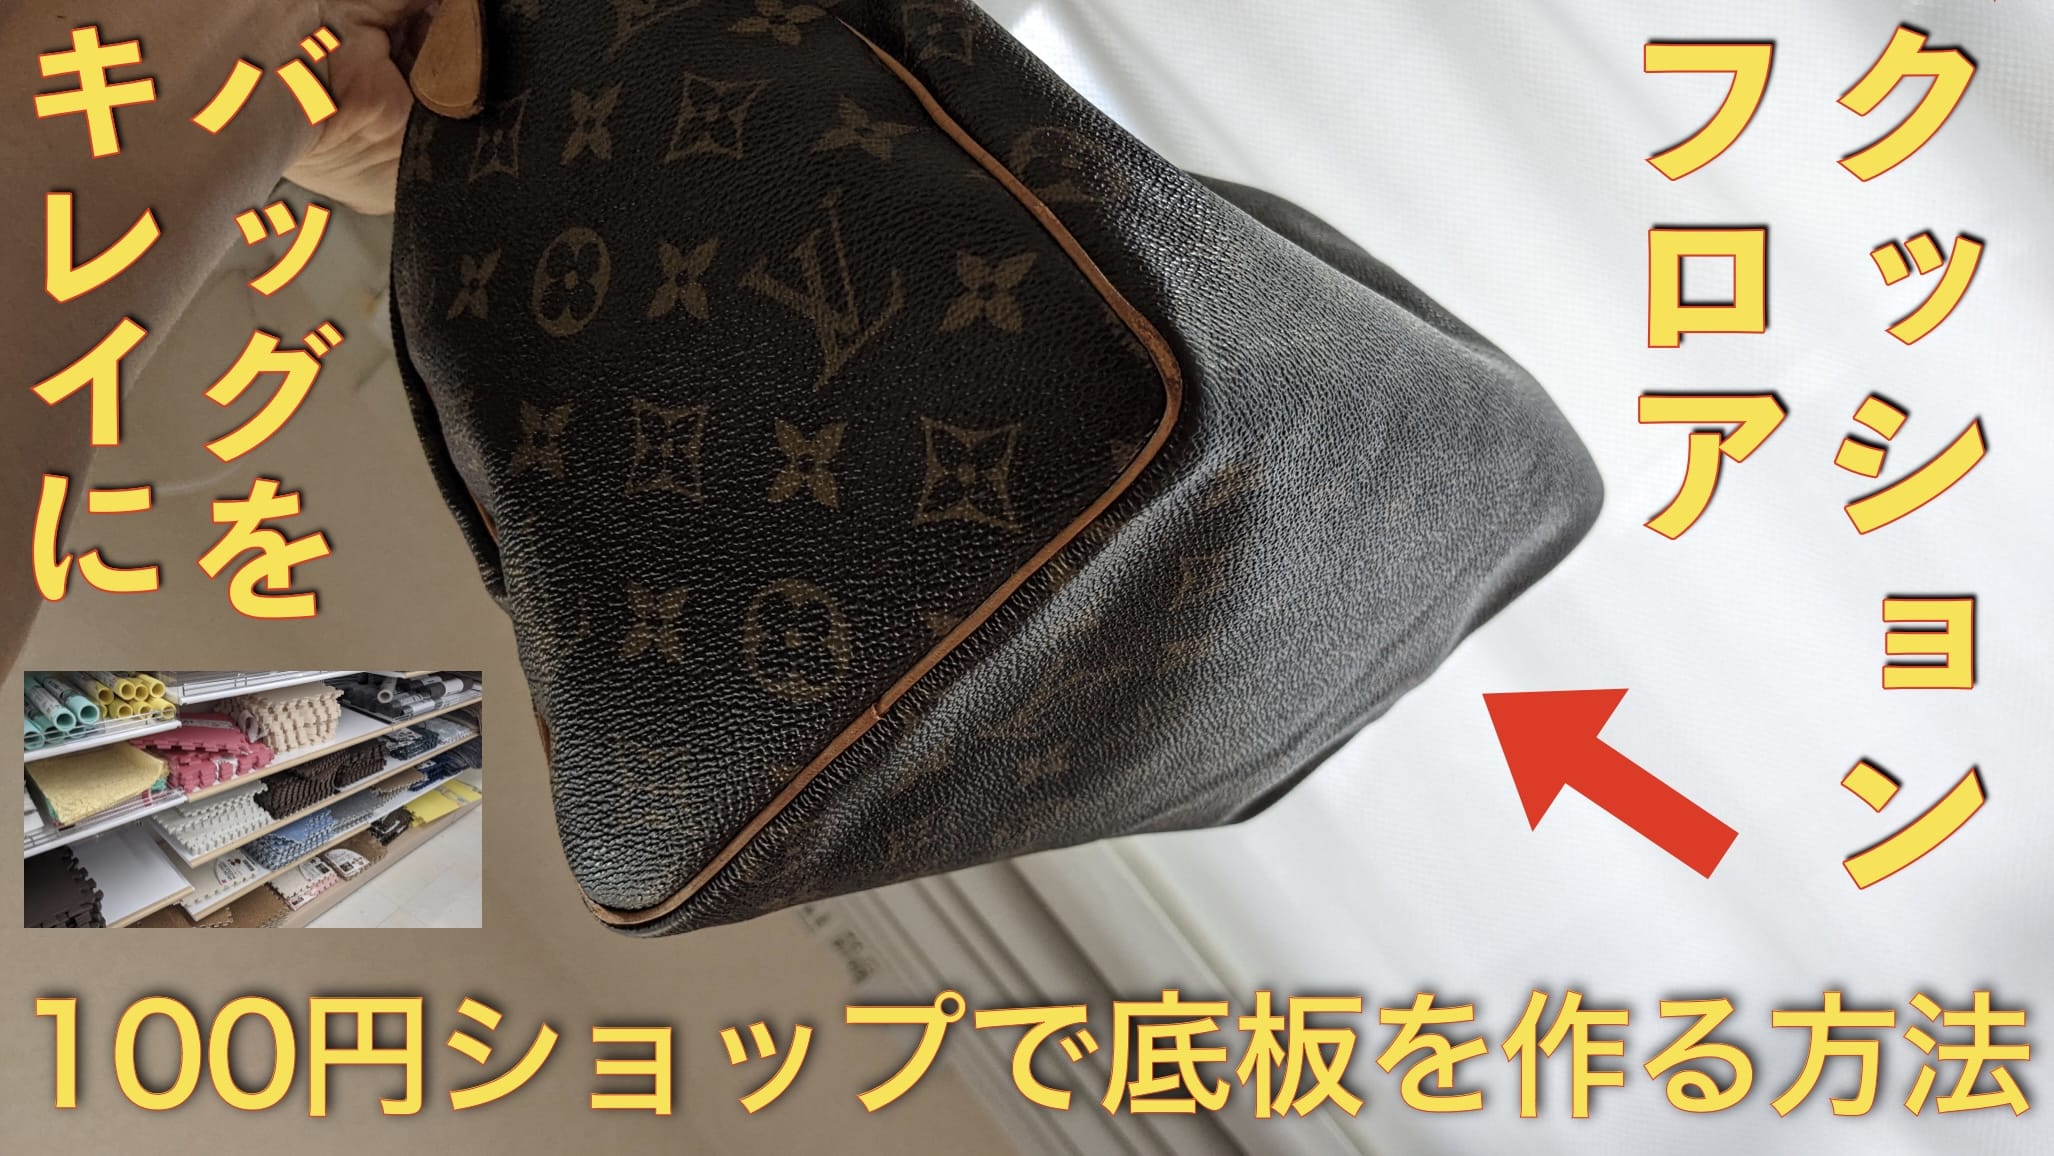 【新発想】バッグの底板を100円ショップのクッションフロアマットで簡単に自作する方法サムネイル画像